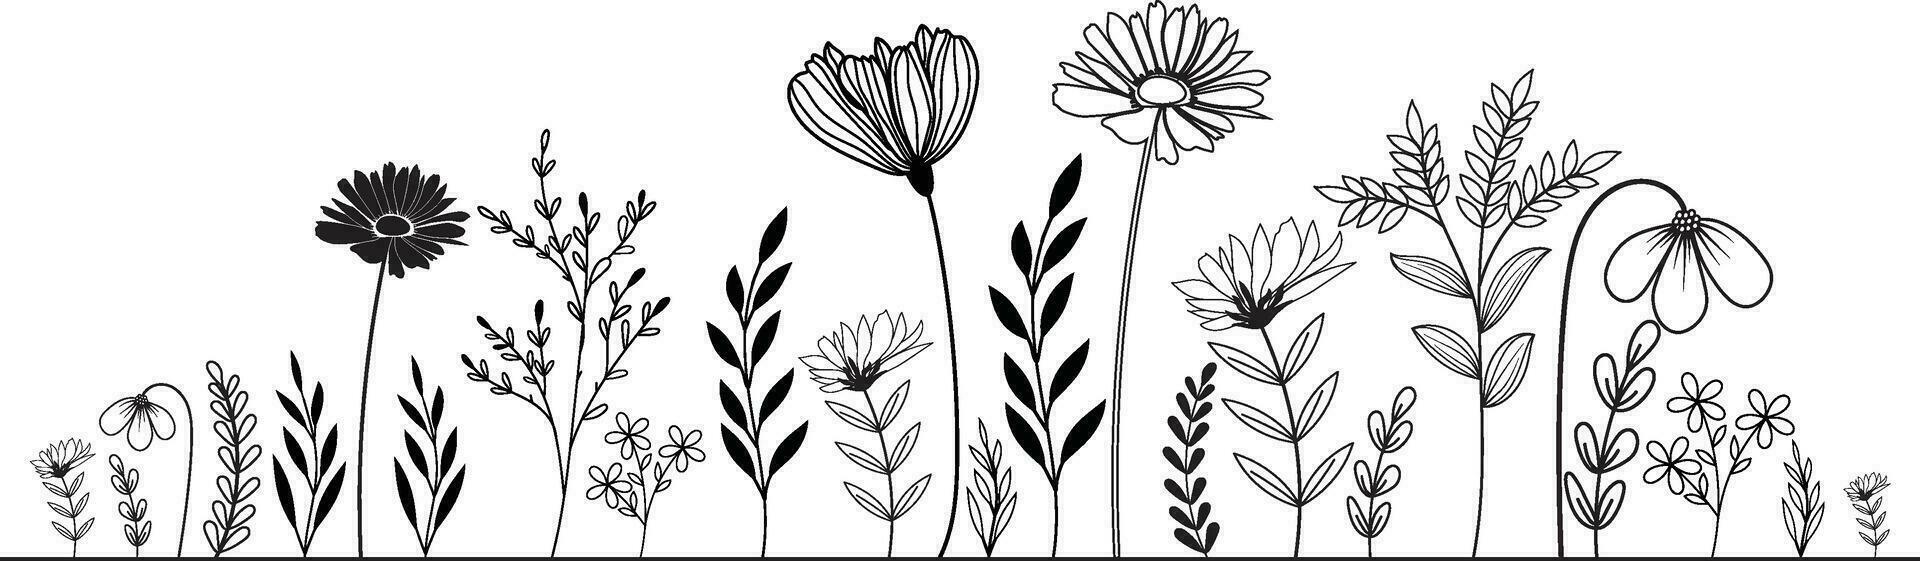 dibujado a mano flores silvestres prado. negro y blanco garabatear flores silvestres y césped plantas. monocromo floral elementos. vector